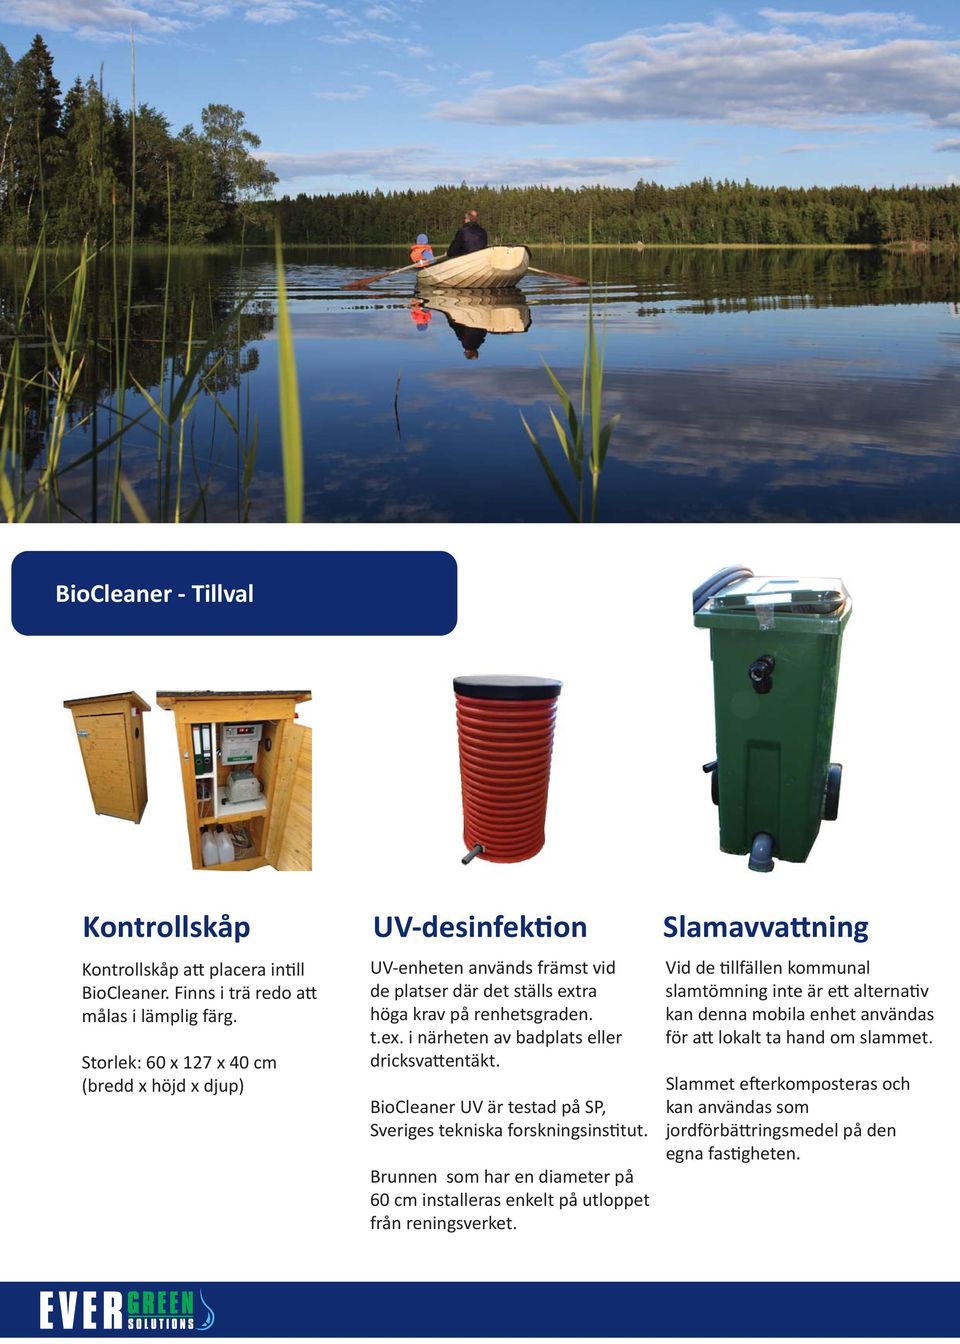 BioCleaner UV är testad på SP, Sveriges tekniska forskningsins tut. Brunnen som har en diameter på 60 cm installeras enkelt på utloppet från reningsverket.